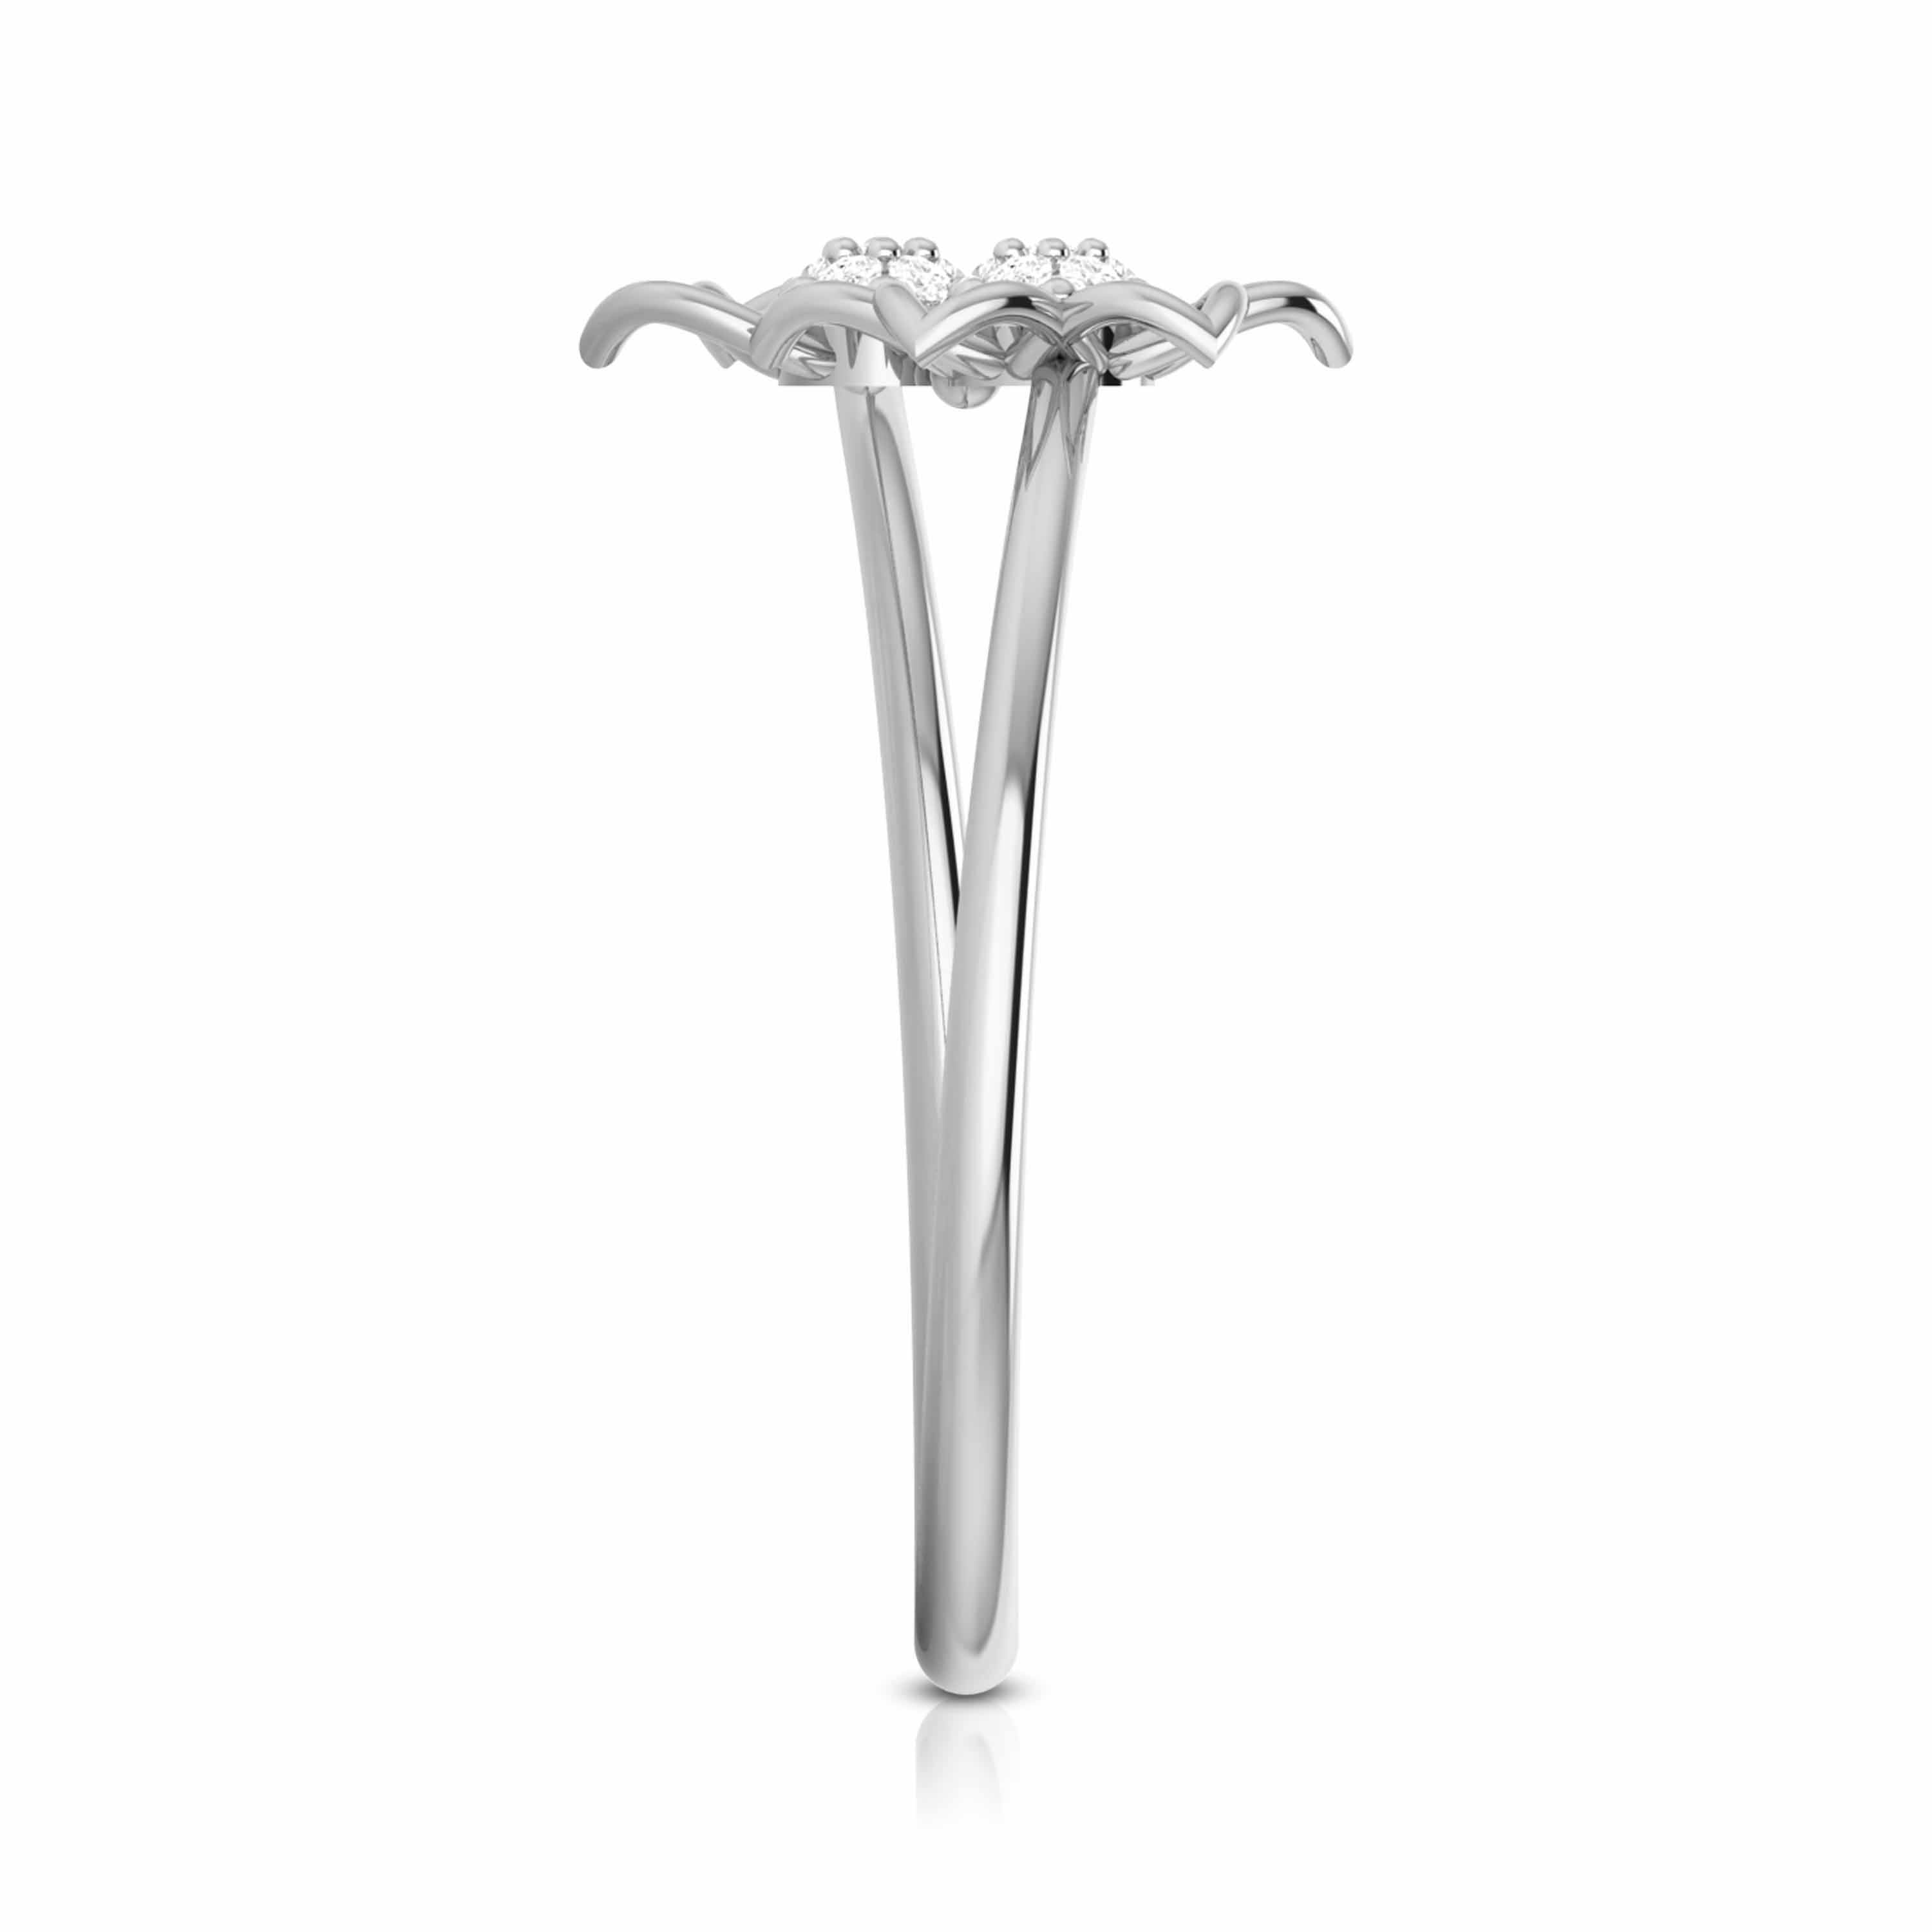 Platinum Diamond Ring for Women JL PT LR 01